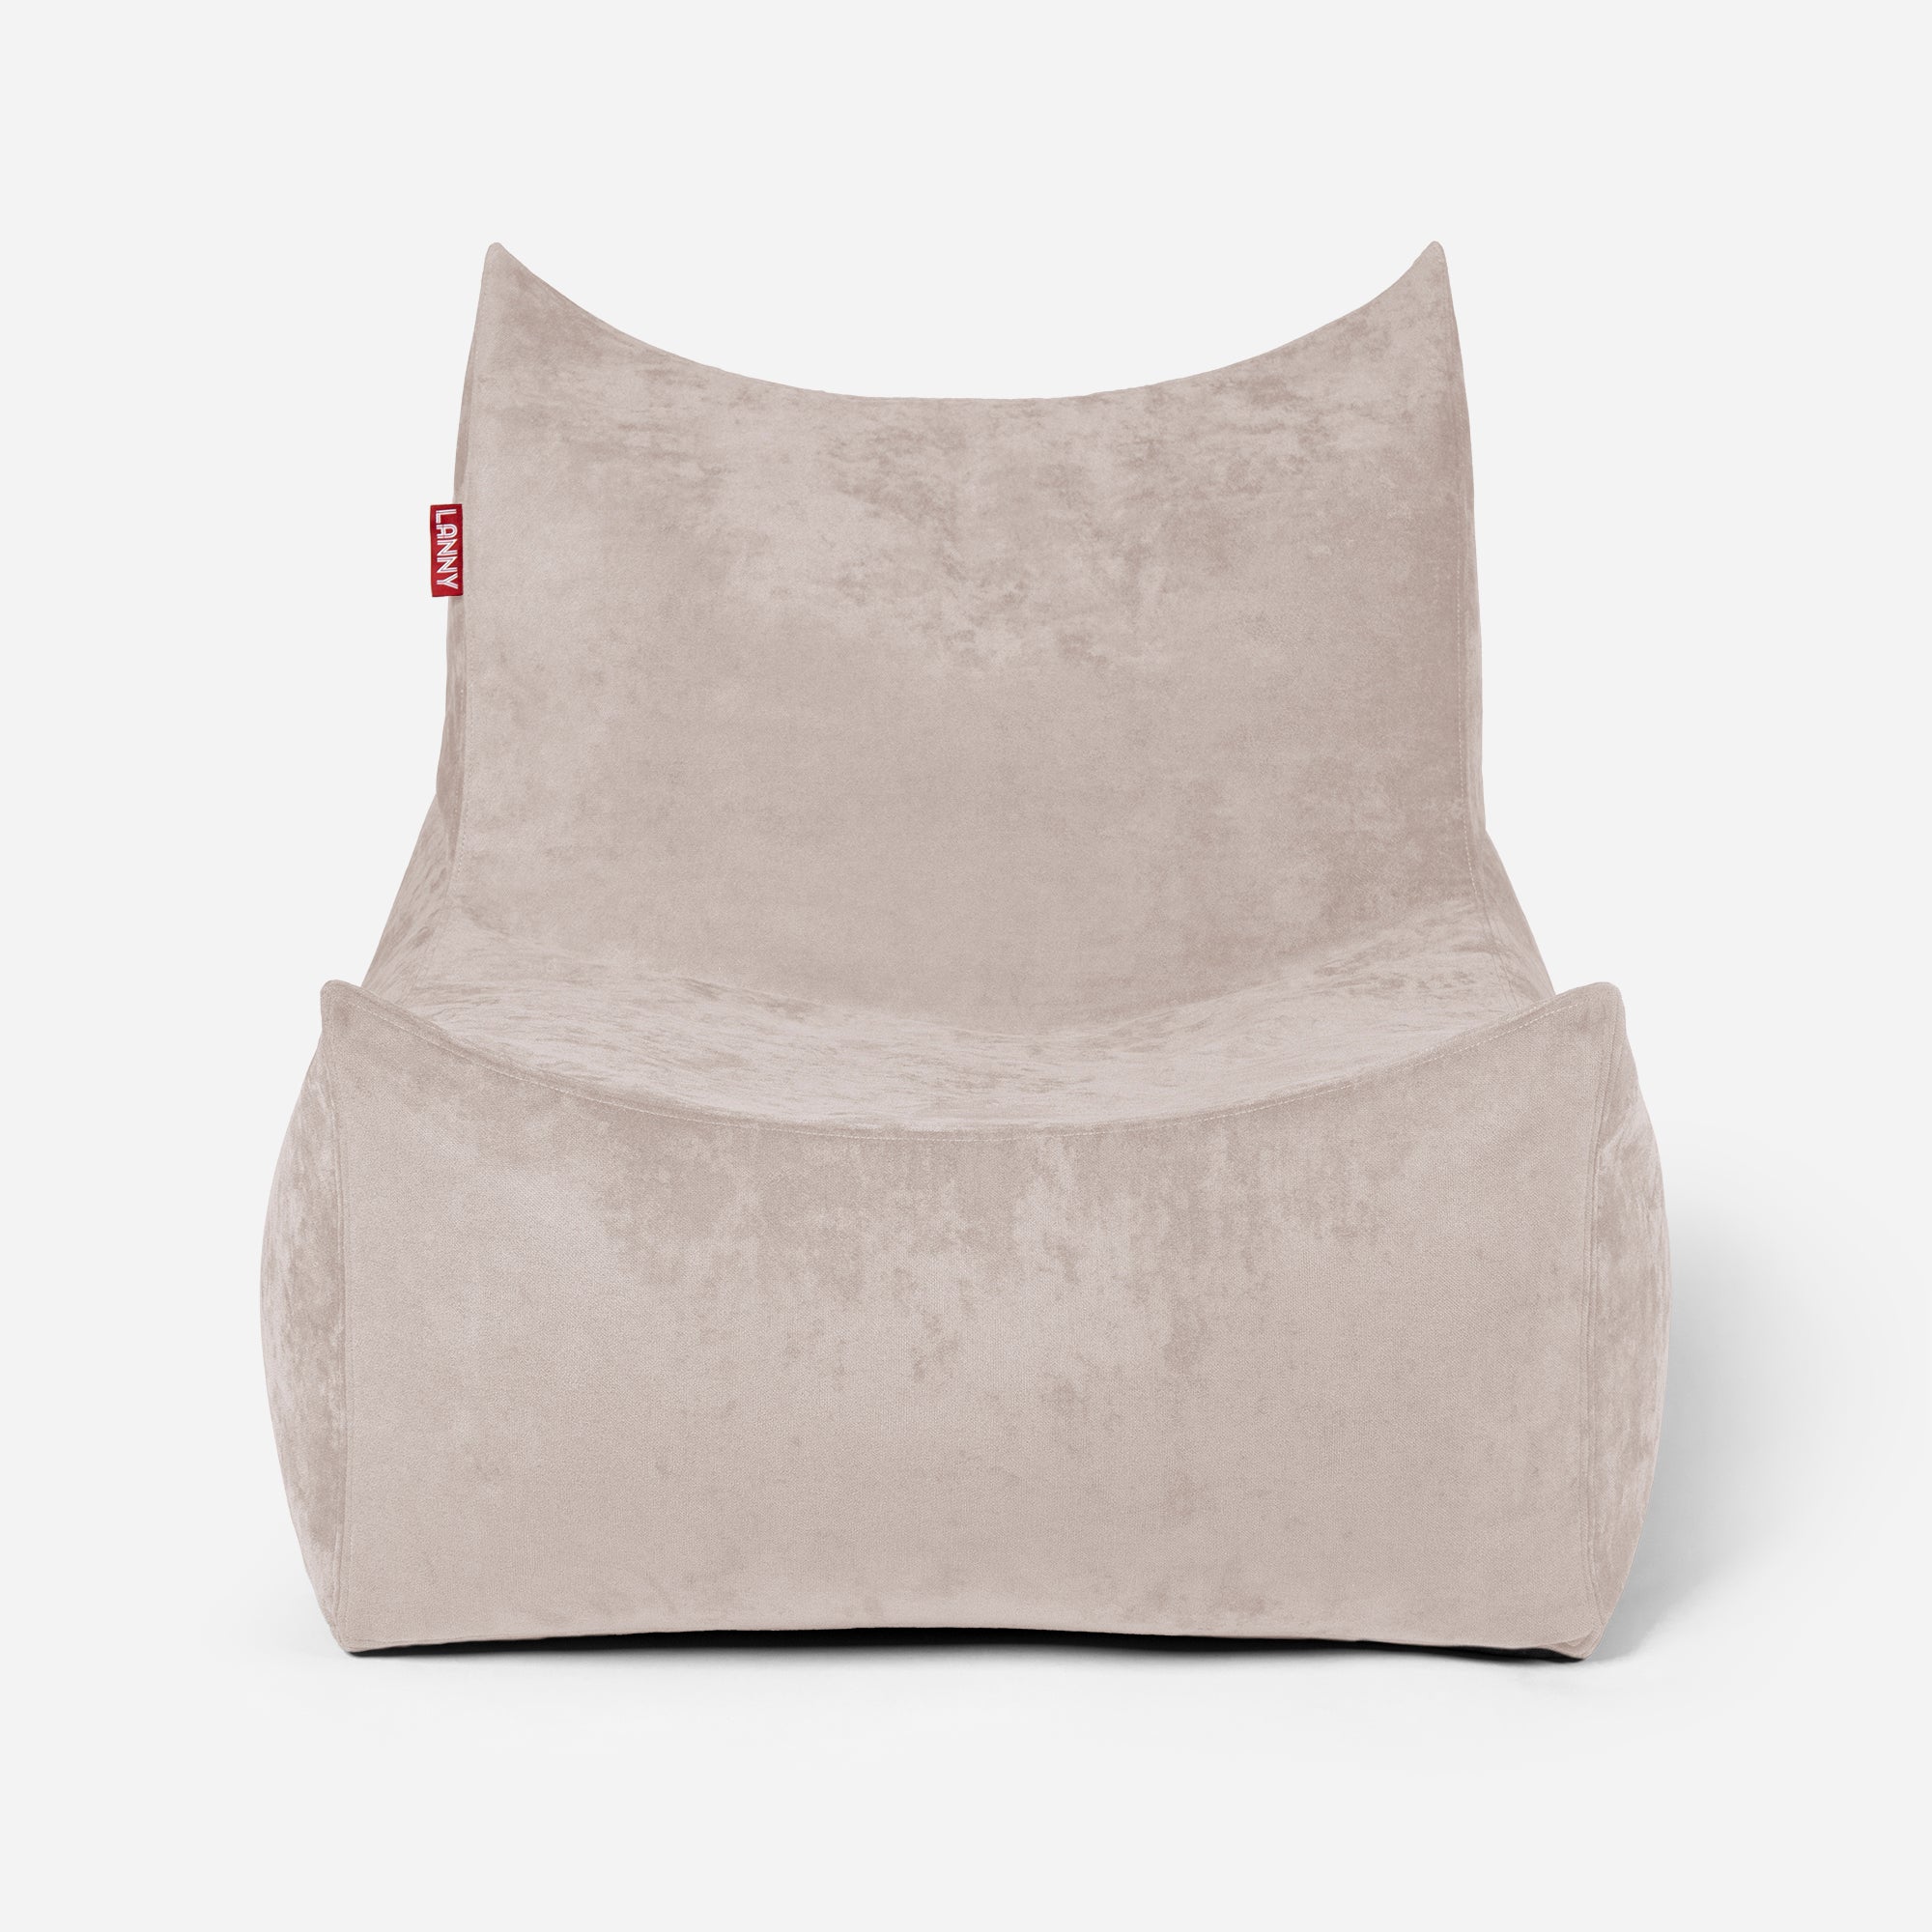 Quadro Aldo Beige Bean bag Chair